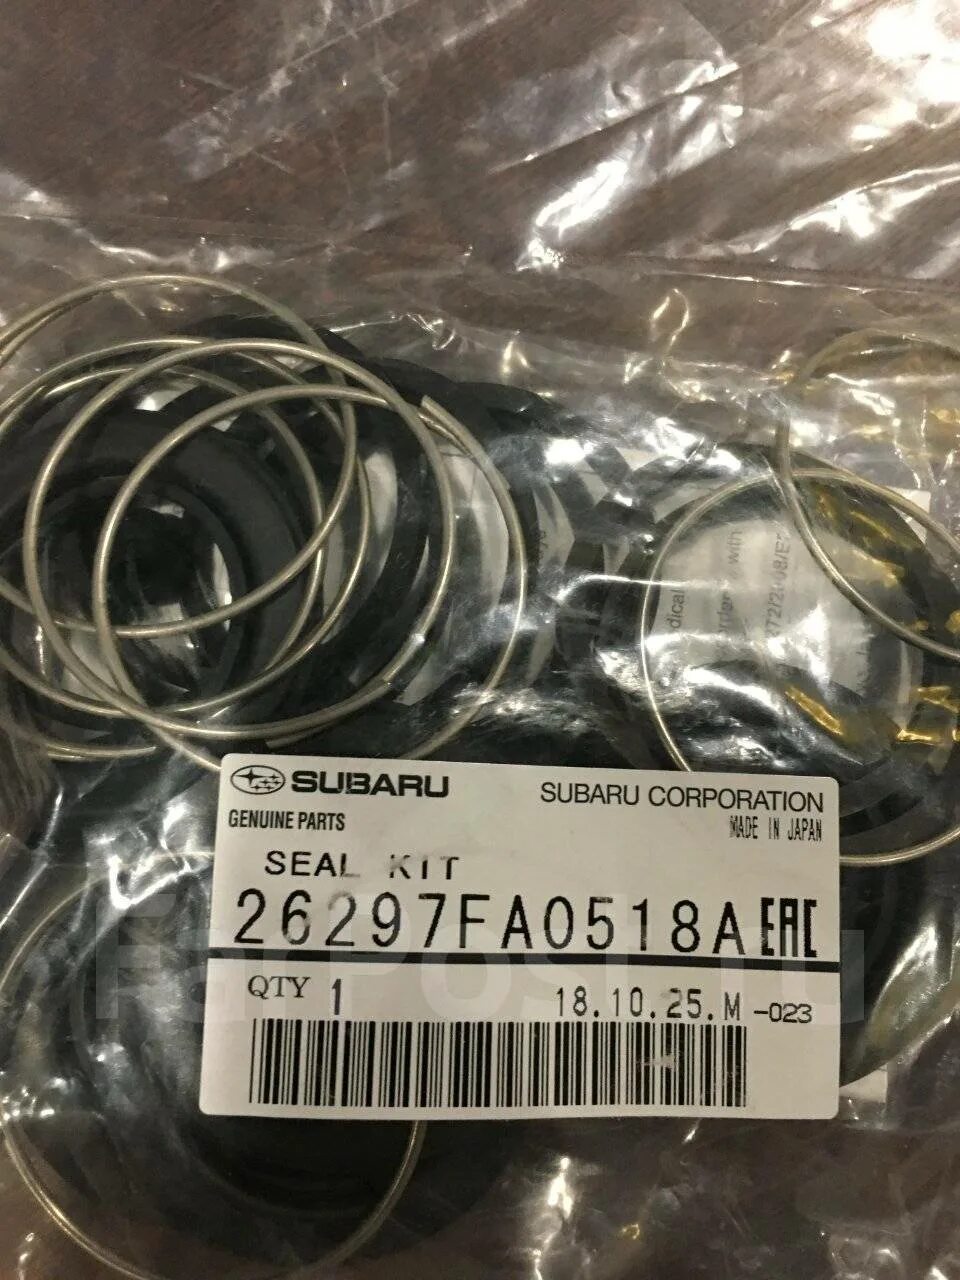 26297-Fa051-8a. Subaru 26297fa0518a. Ремкомплект суппорта Субару 293мм. 26297fa051.